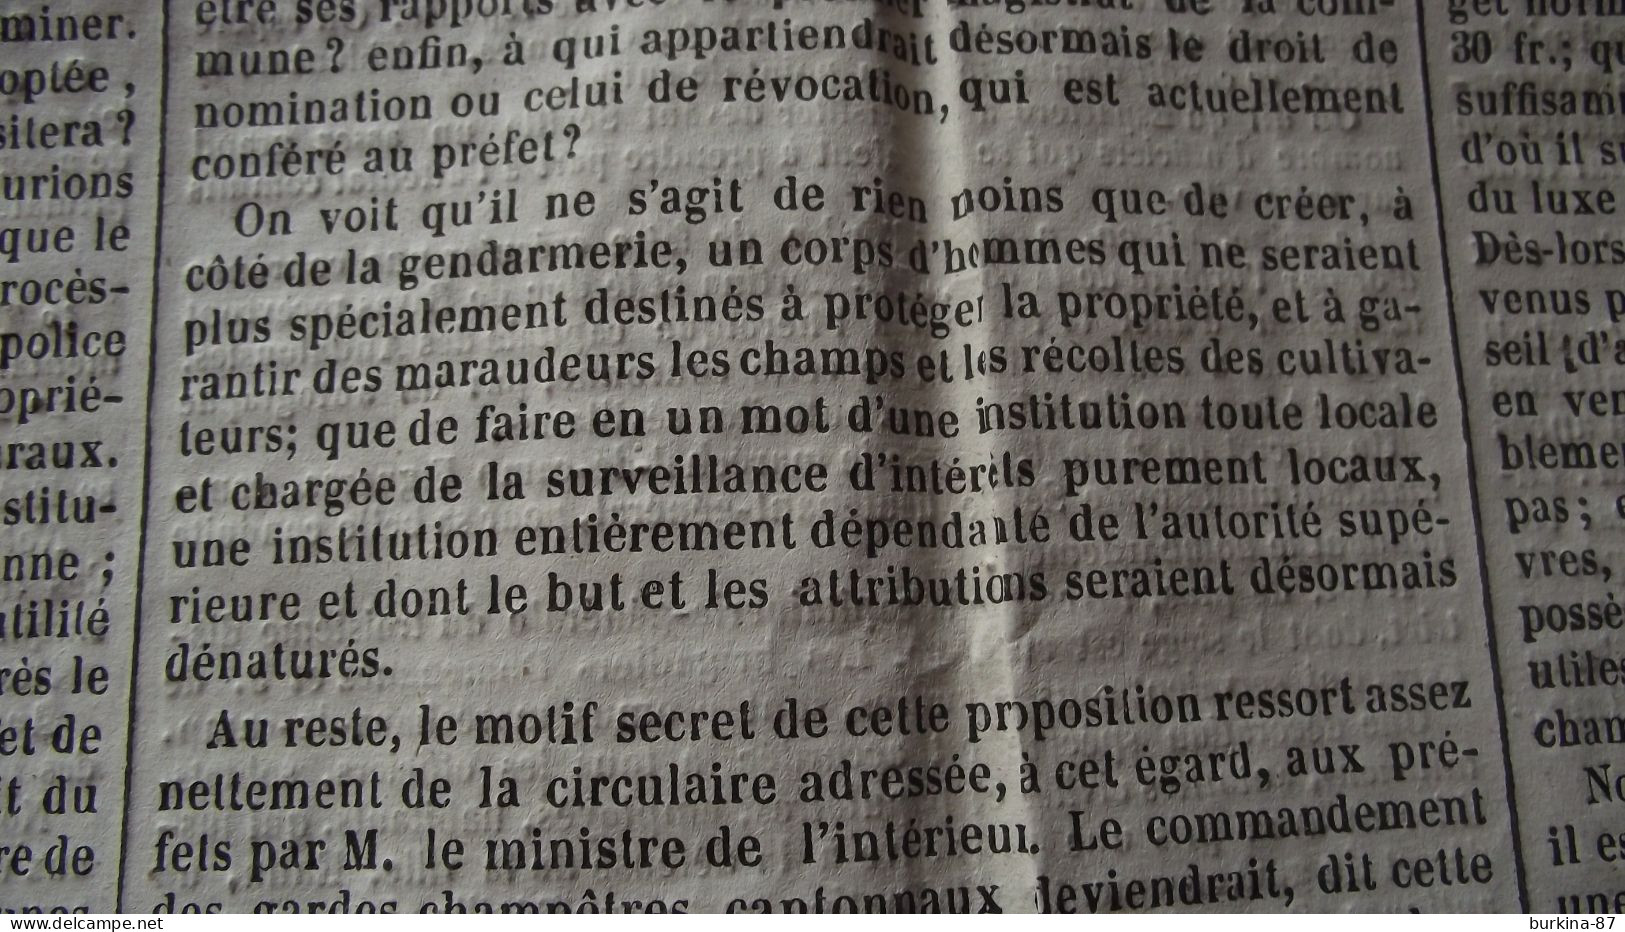 LE PERSEVERANT, Journal, 10 Aout 1843, Journal Des Départements Du Centre, Limoges - 1800 - 1849